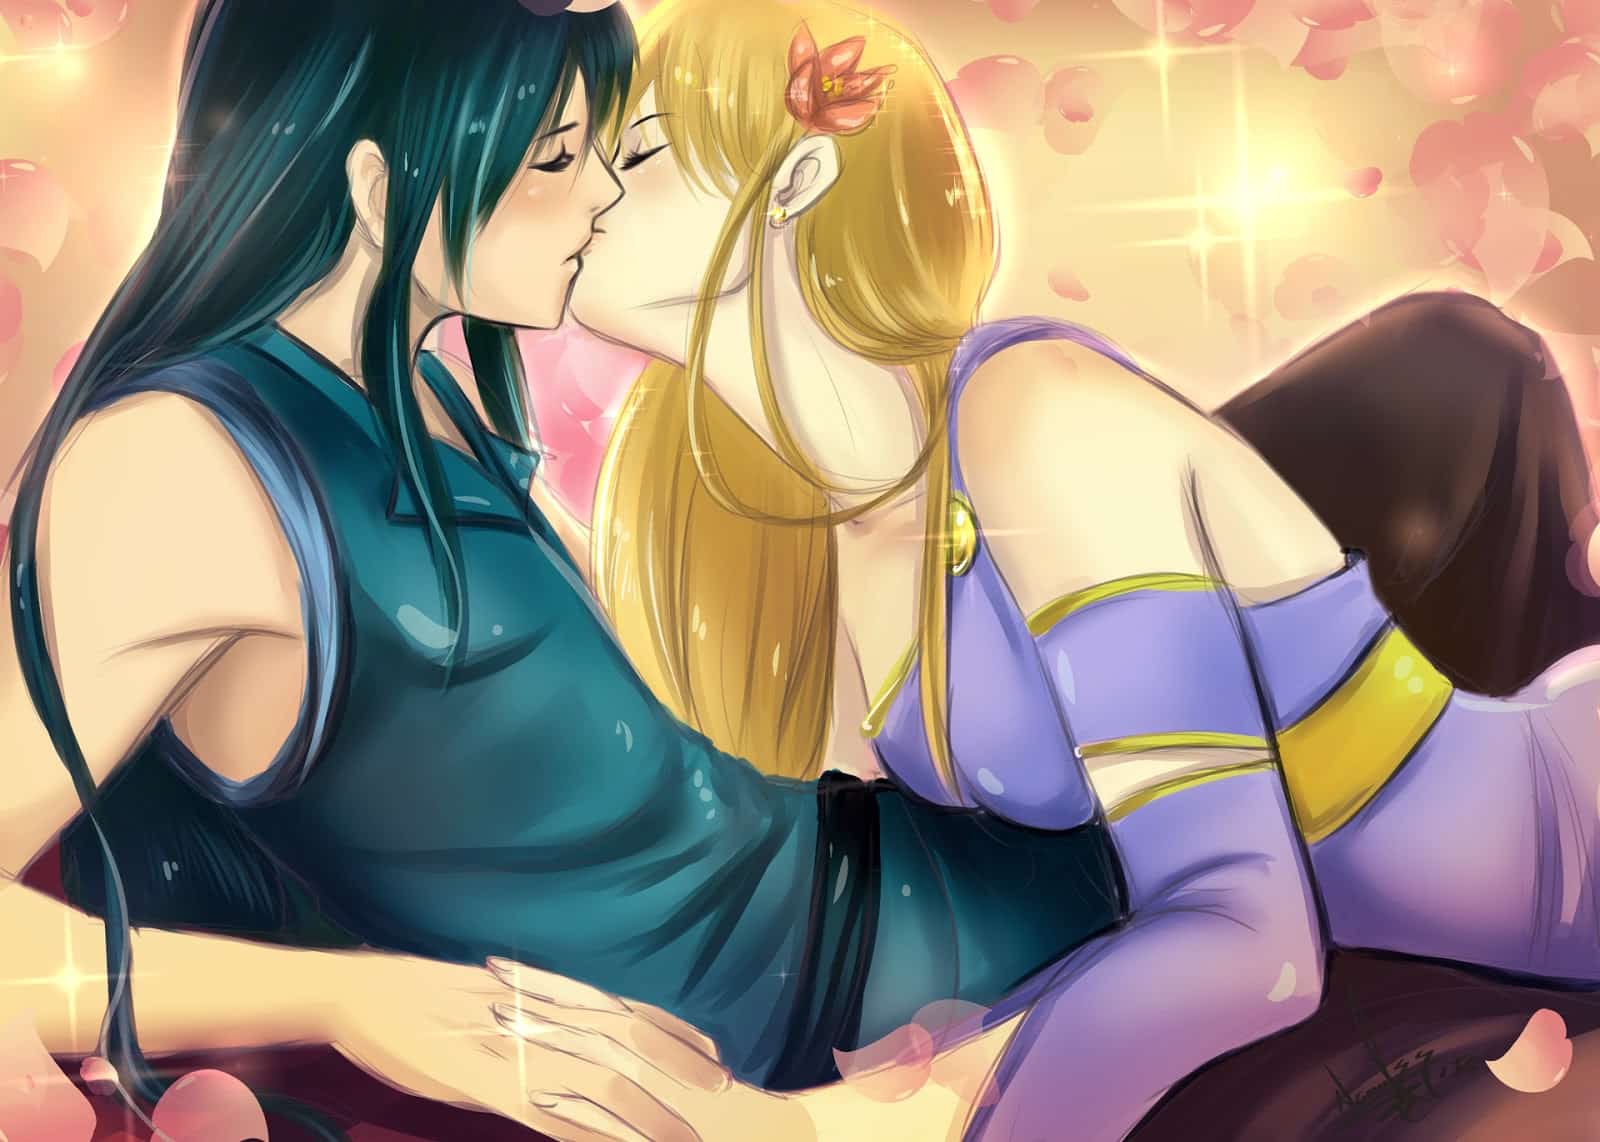 Tải hình Anime hôn nhau nồng cháy